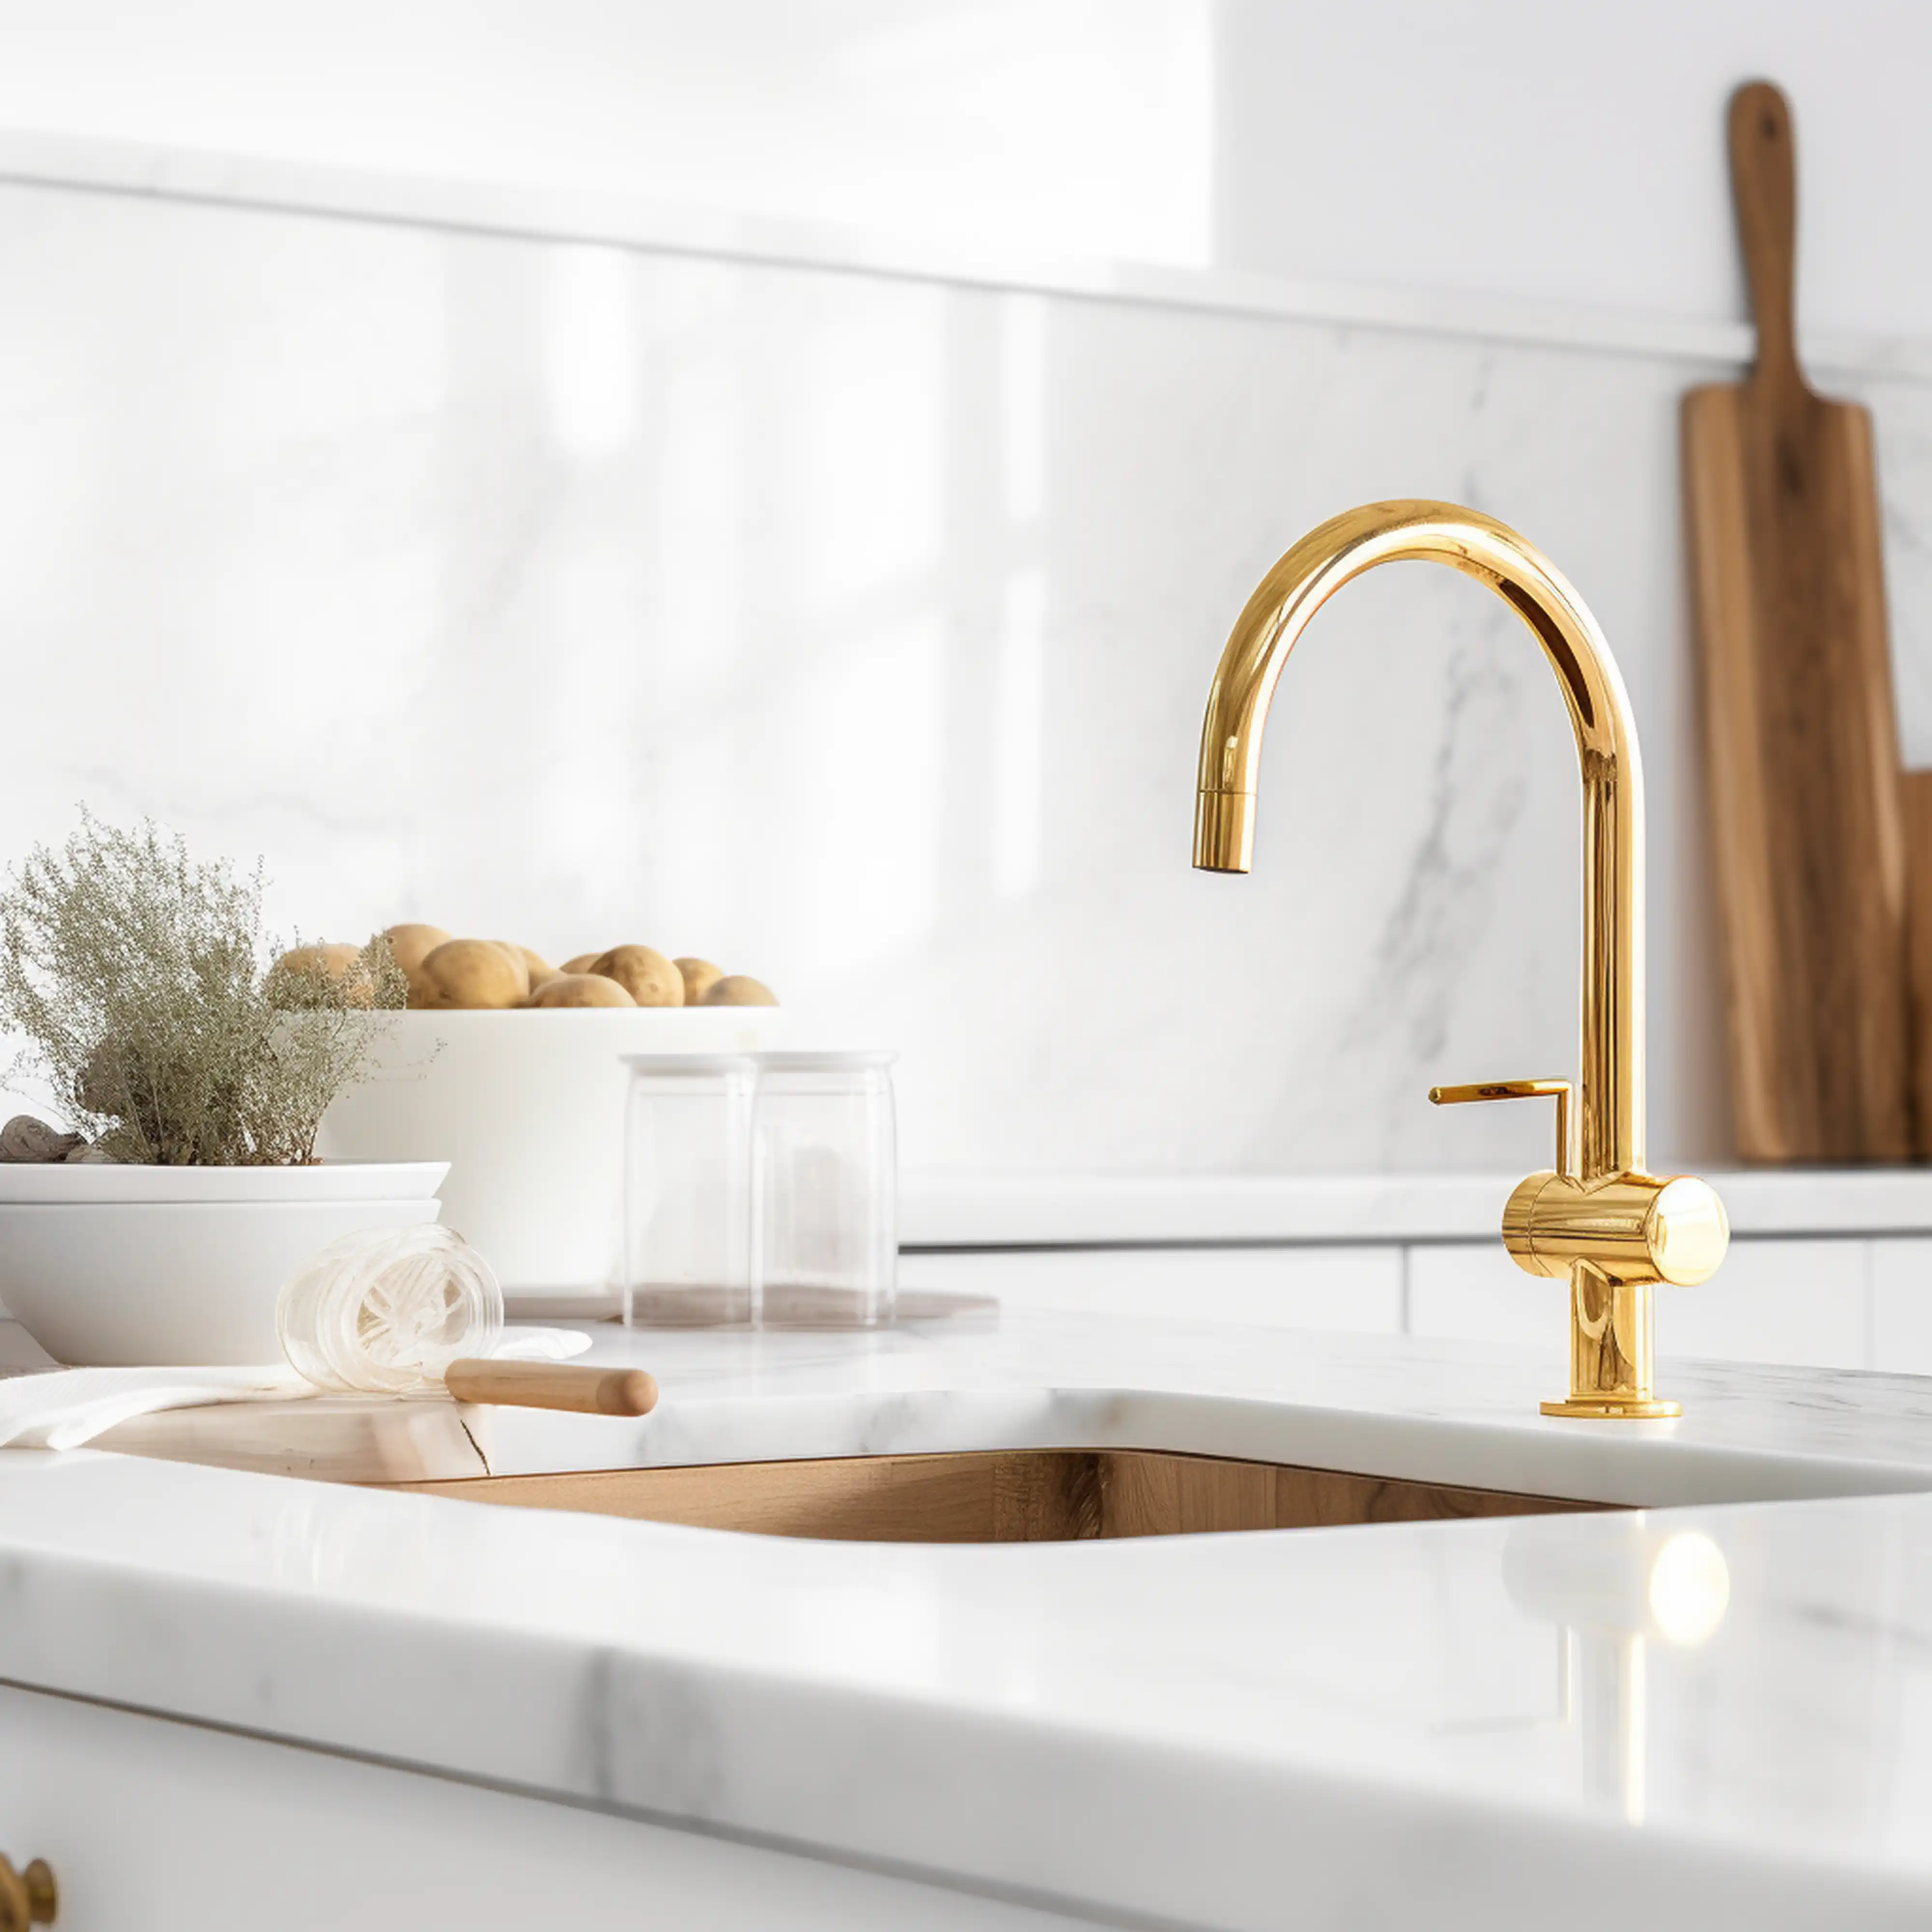 Détail de cuisine élégante mettant en avant un robinet doré, un comptoir en marbre et une présentation de produits frais